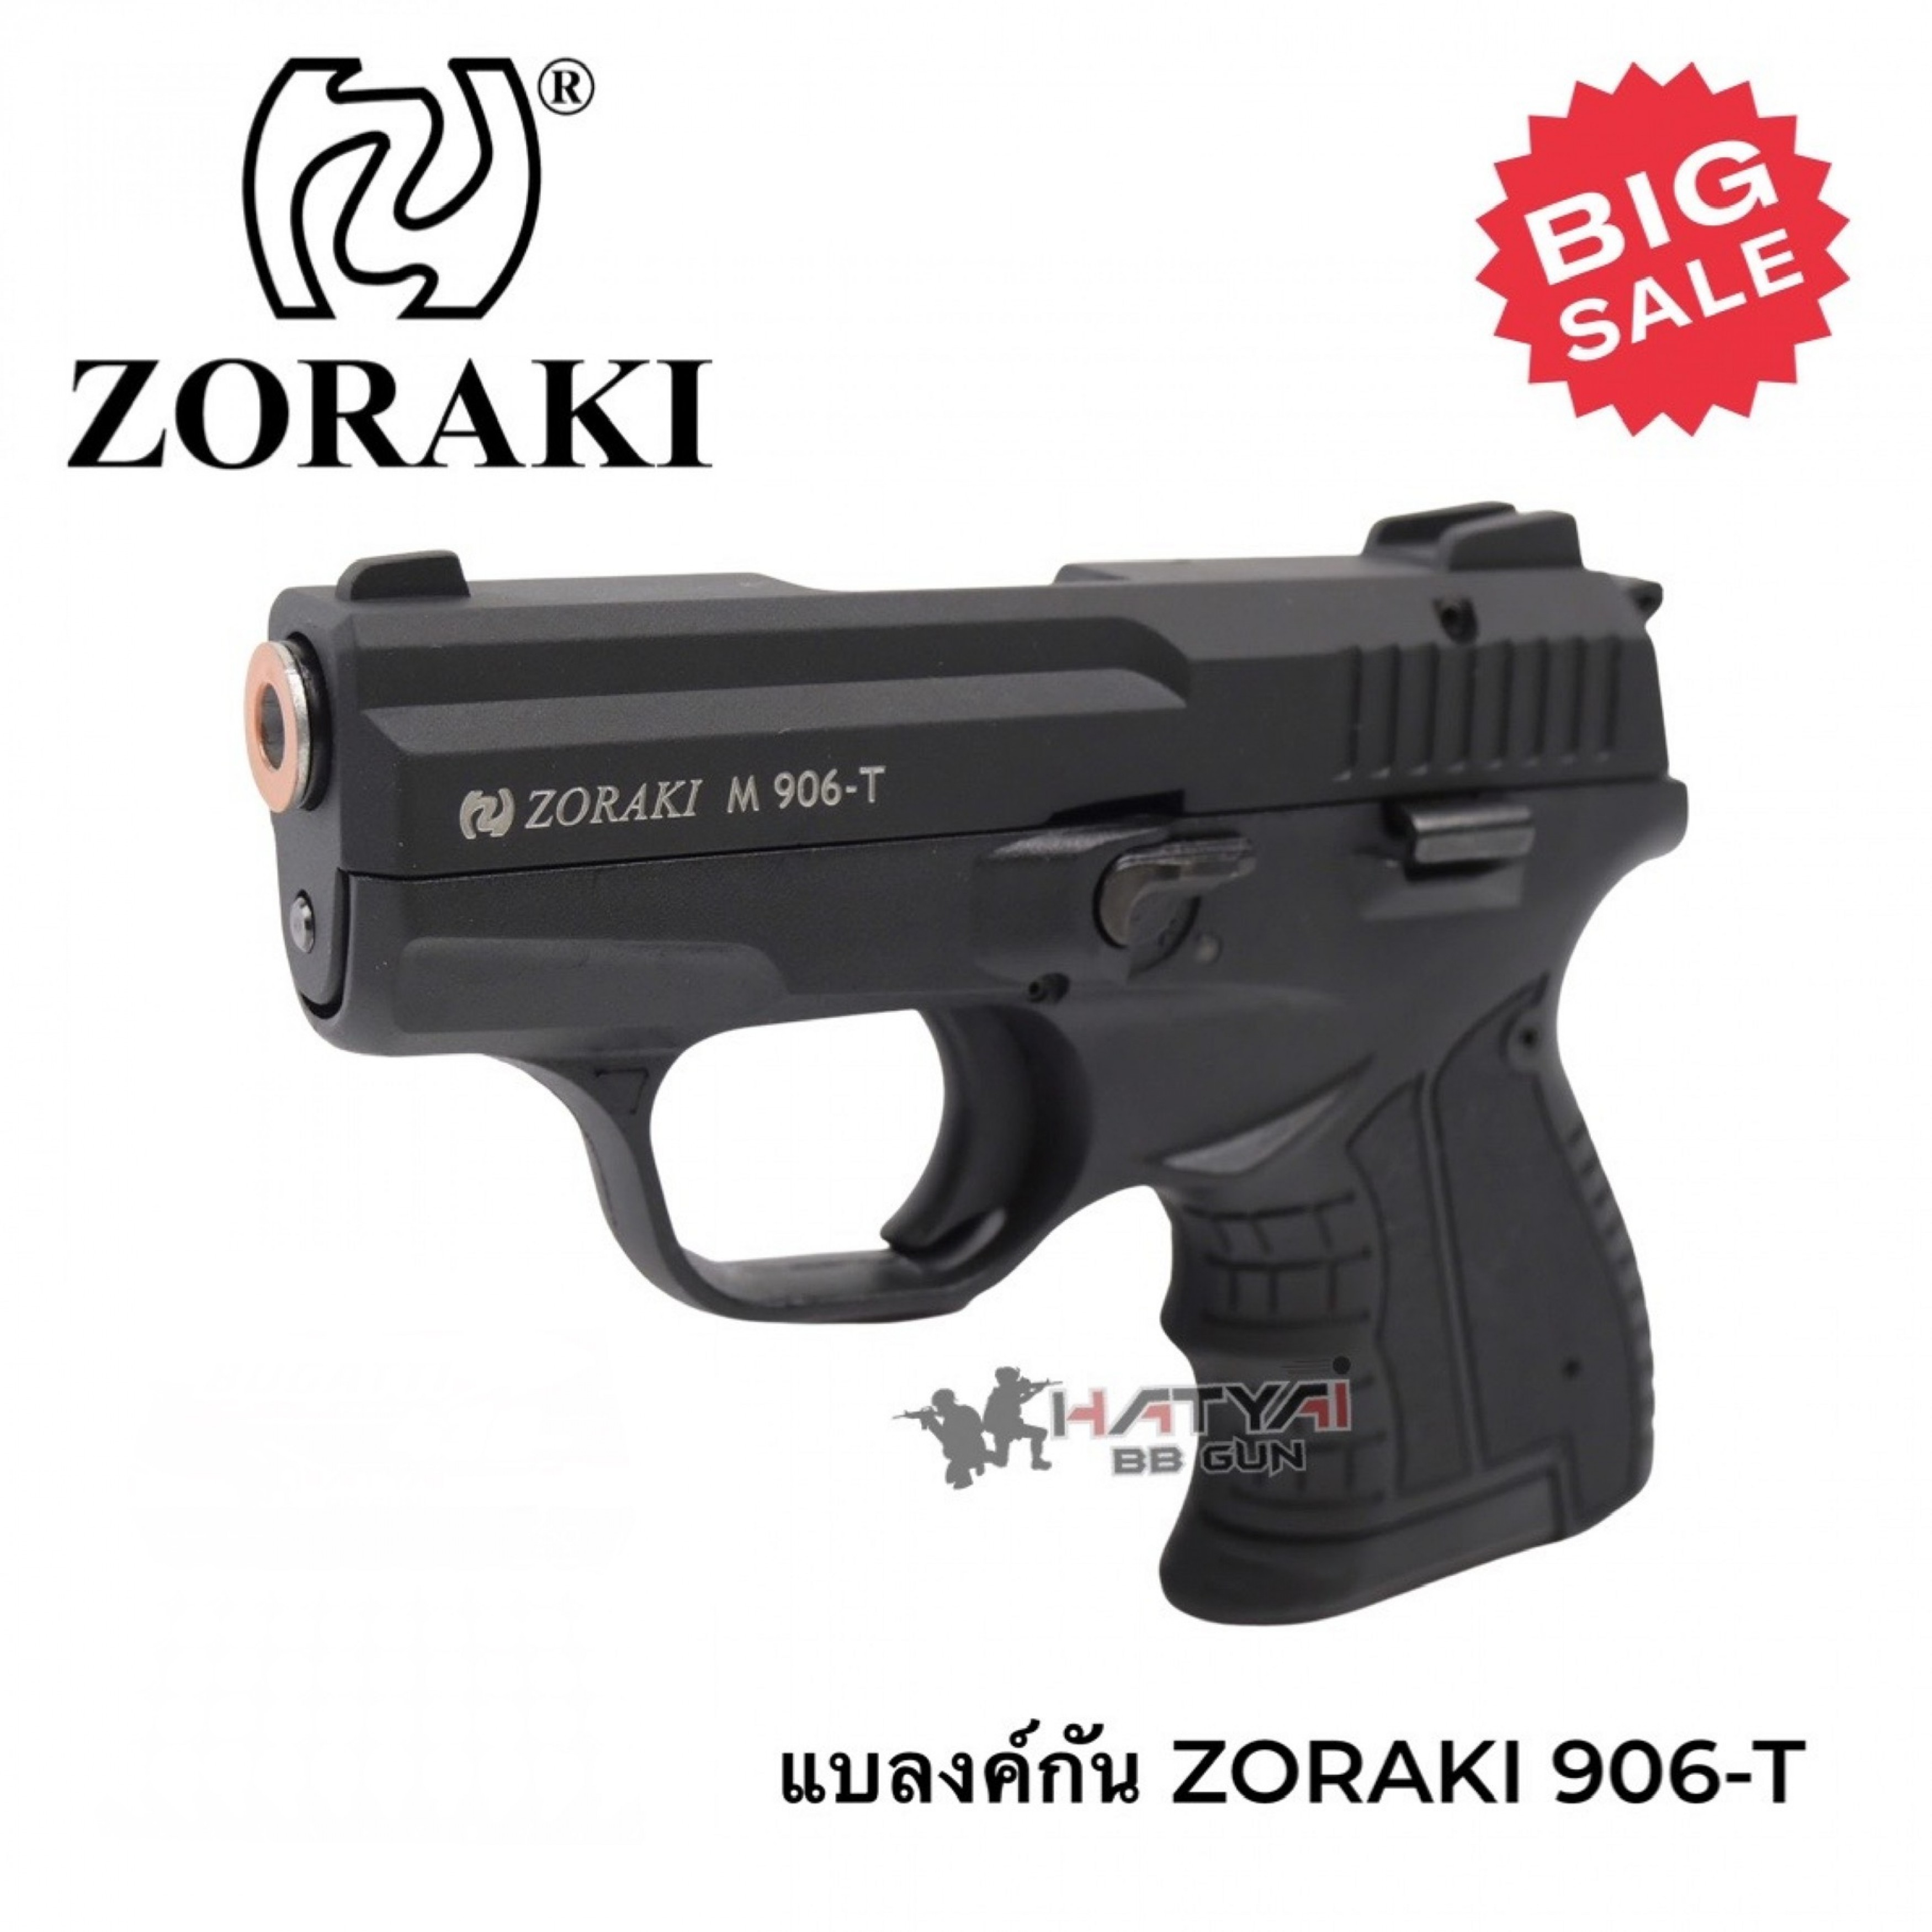 Pistola Zoraki 906 Traumática